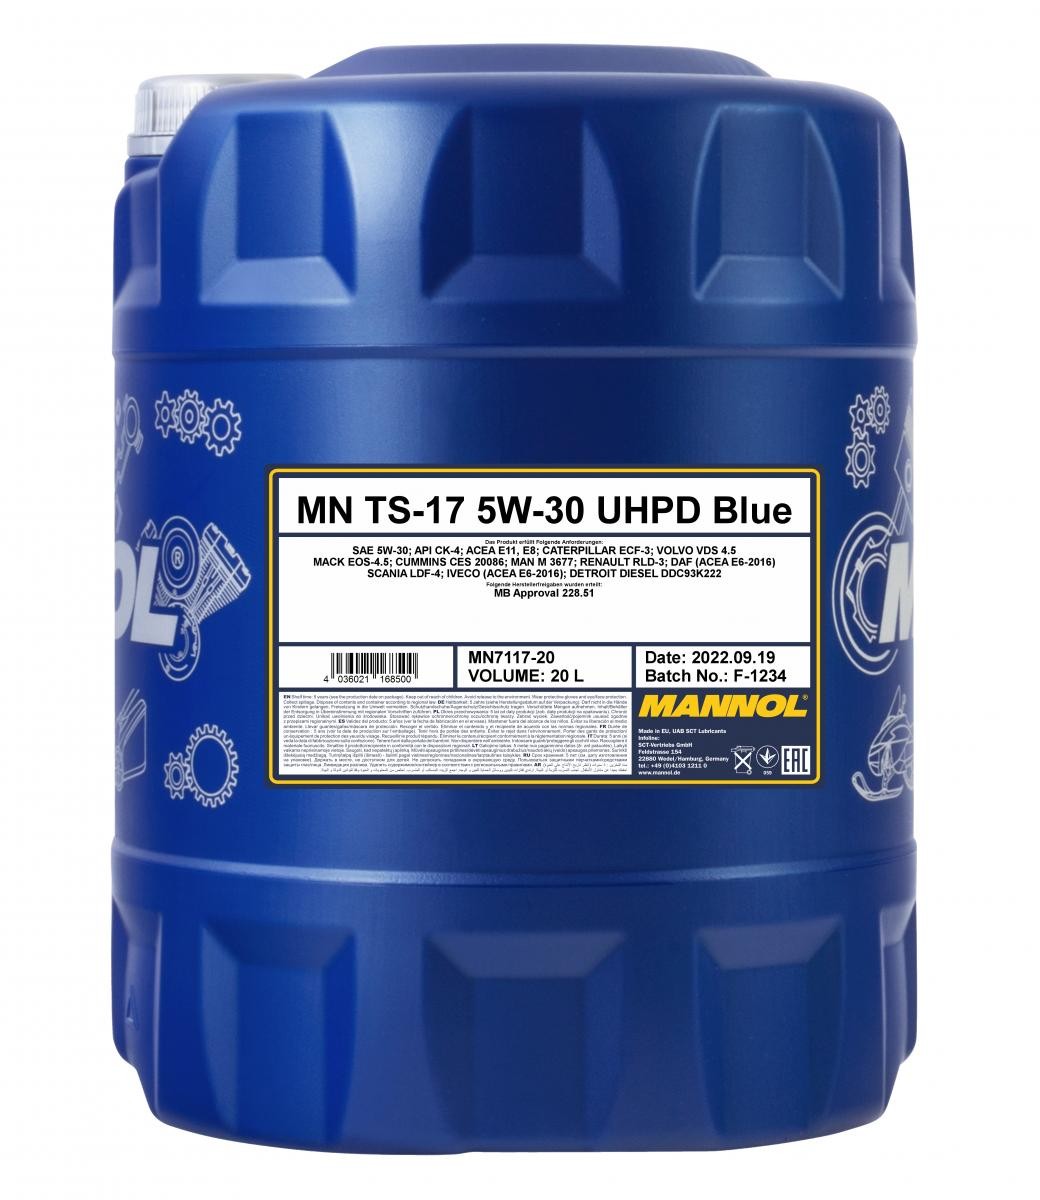 Motoröl 5W-30 teilsynthetisches - MN7117-20 MANNOL TS-17, UHPD Blue